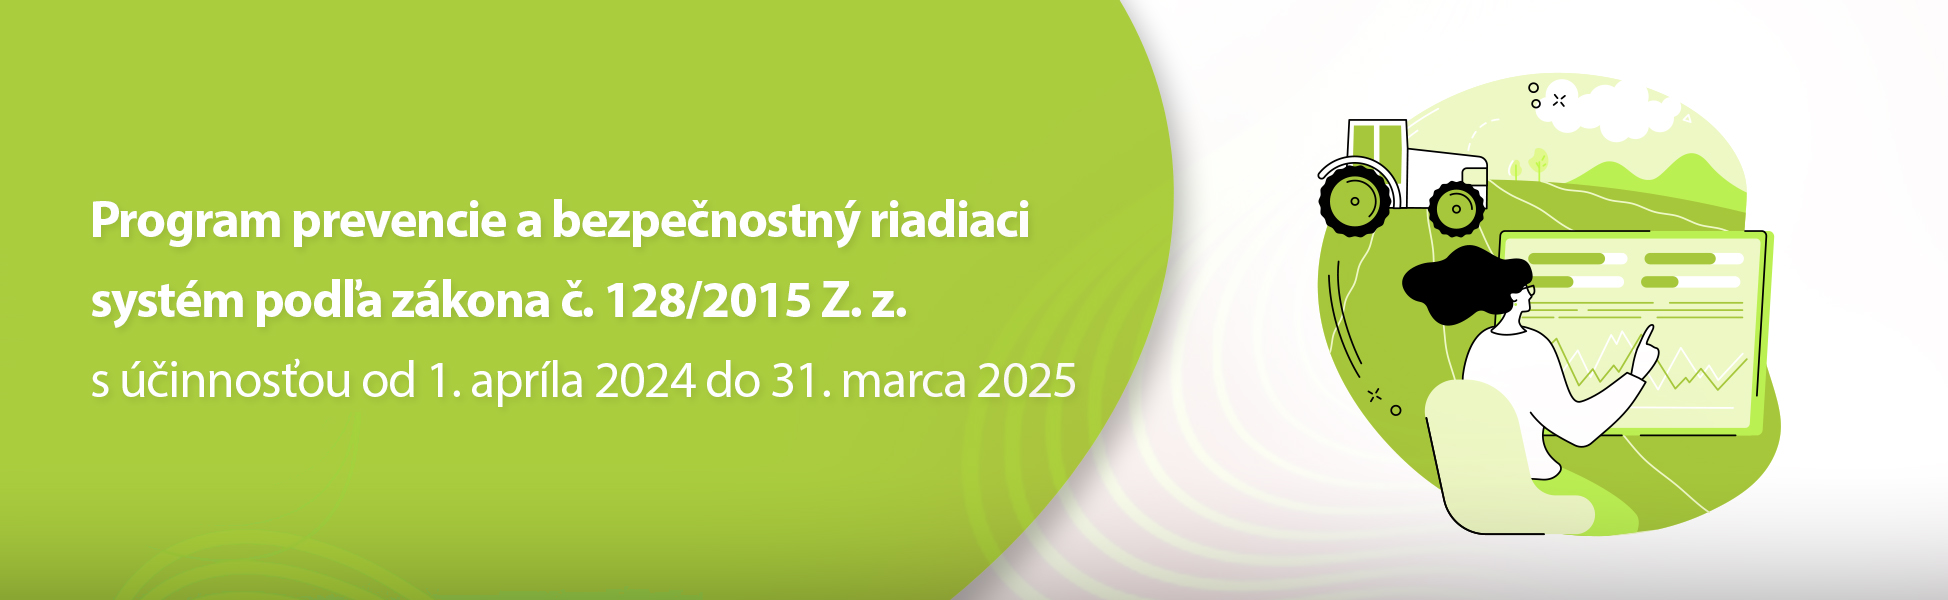 Program prevencie a bezpenostn riadiaci systm poda zkona . 128/2015 Z. z. s innosou od 1. aprla 2024 do 31. marca 2025